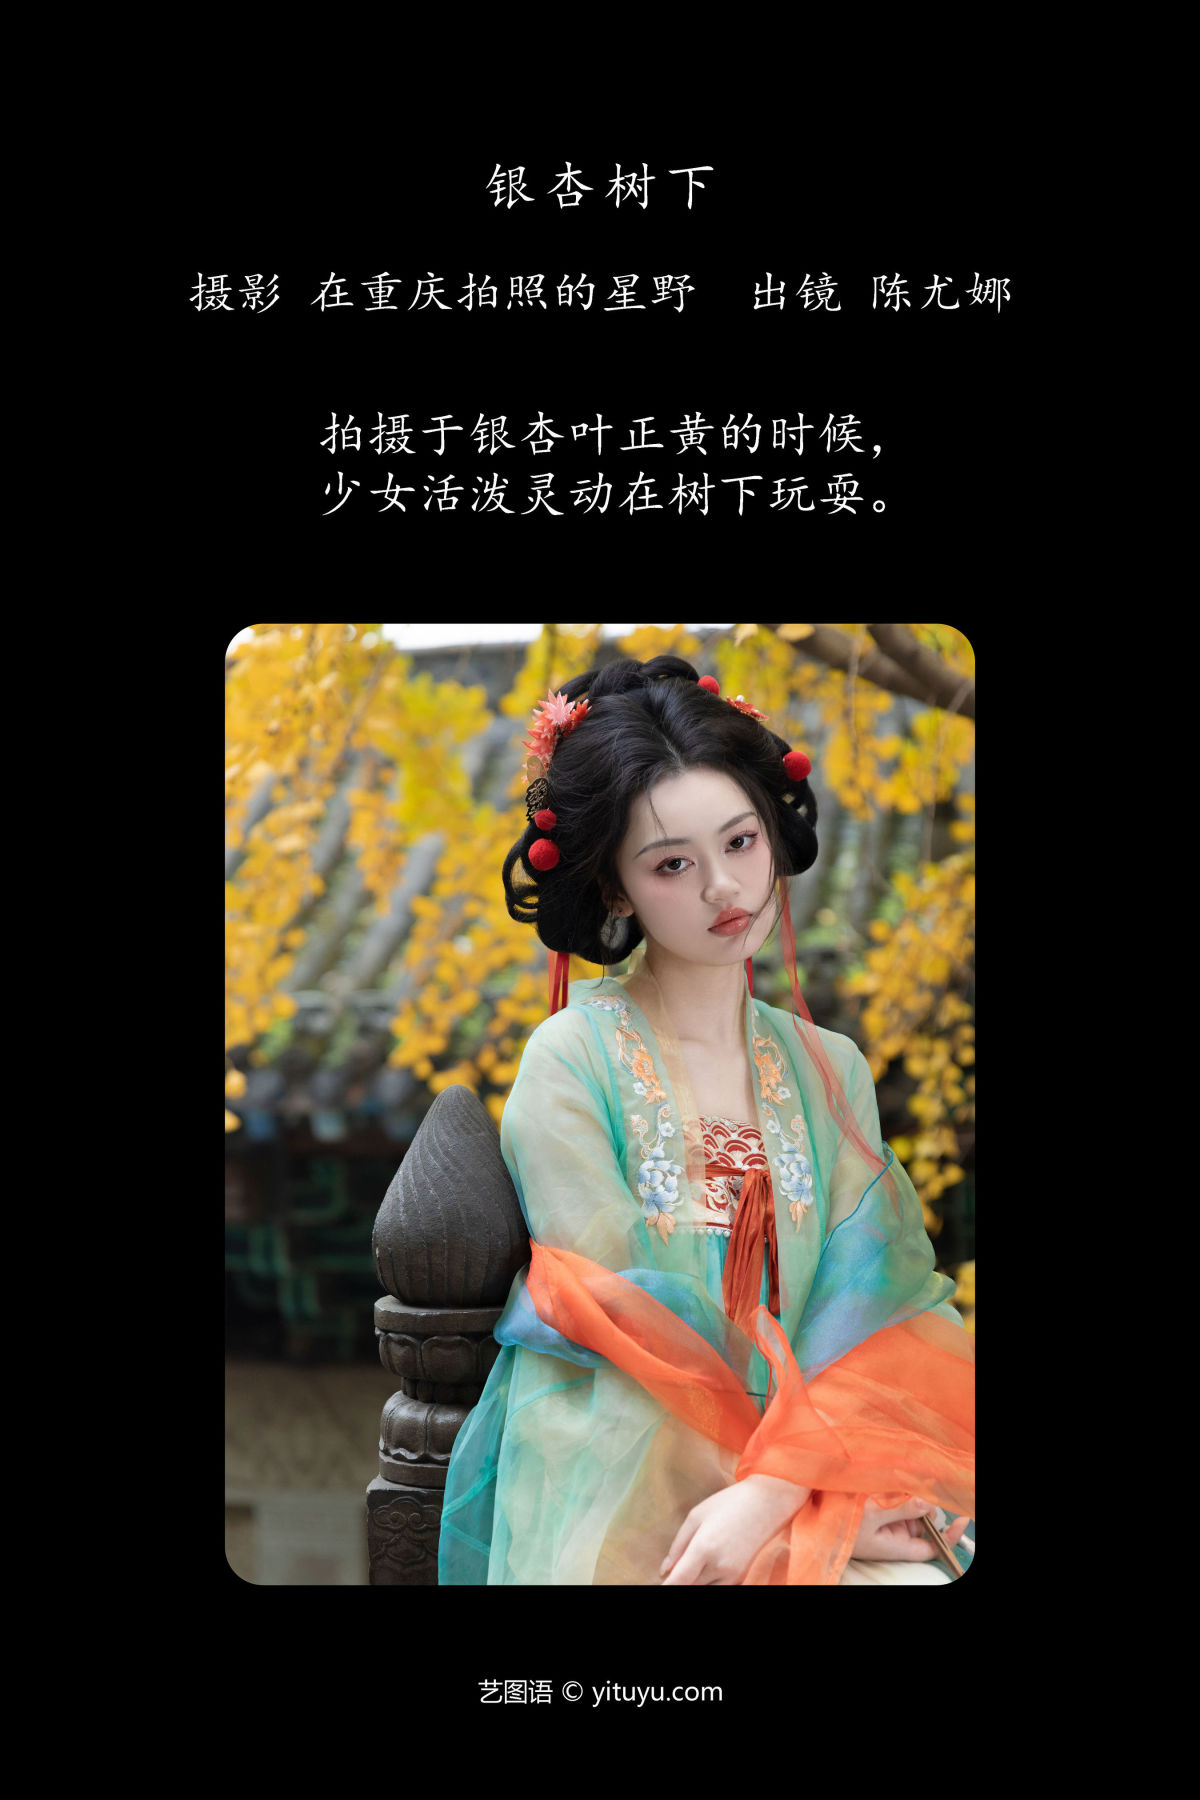 在重庆拍照的星野_陈尤娜《银杏树下》美图作品图片2